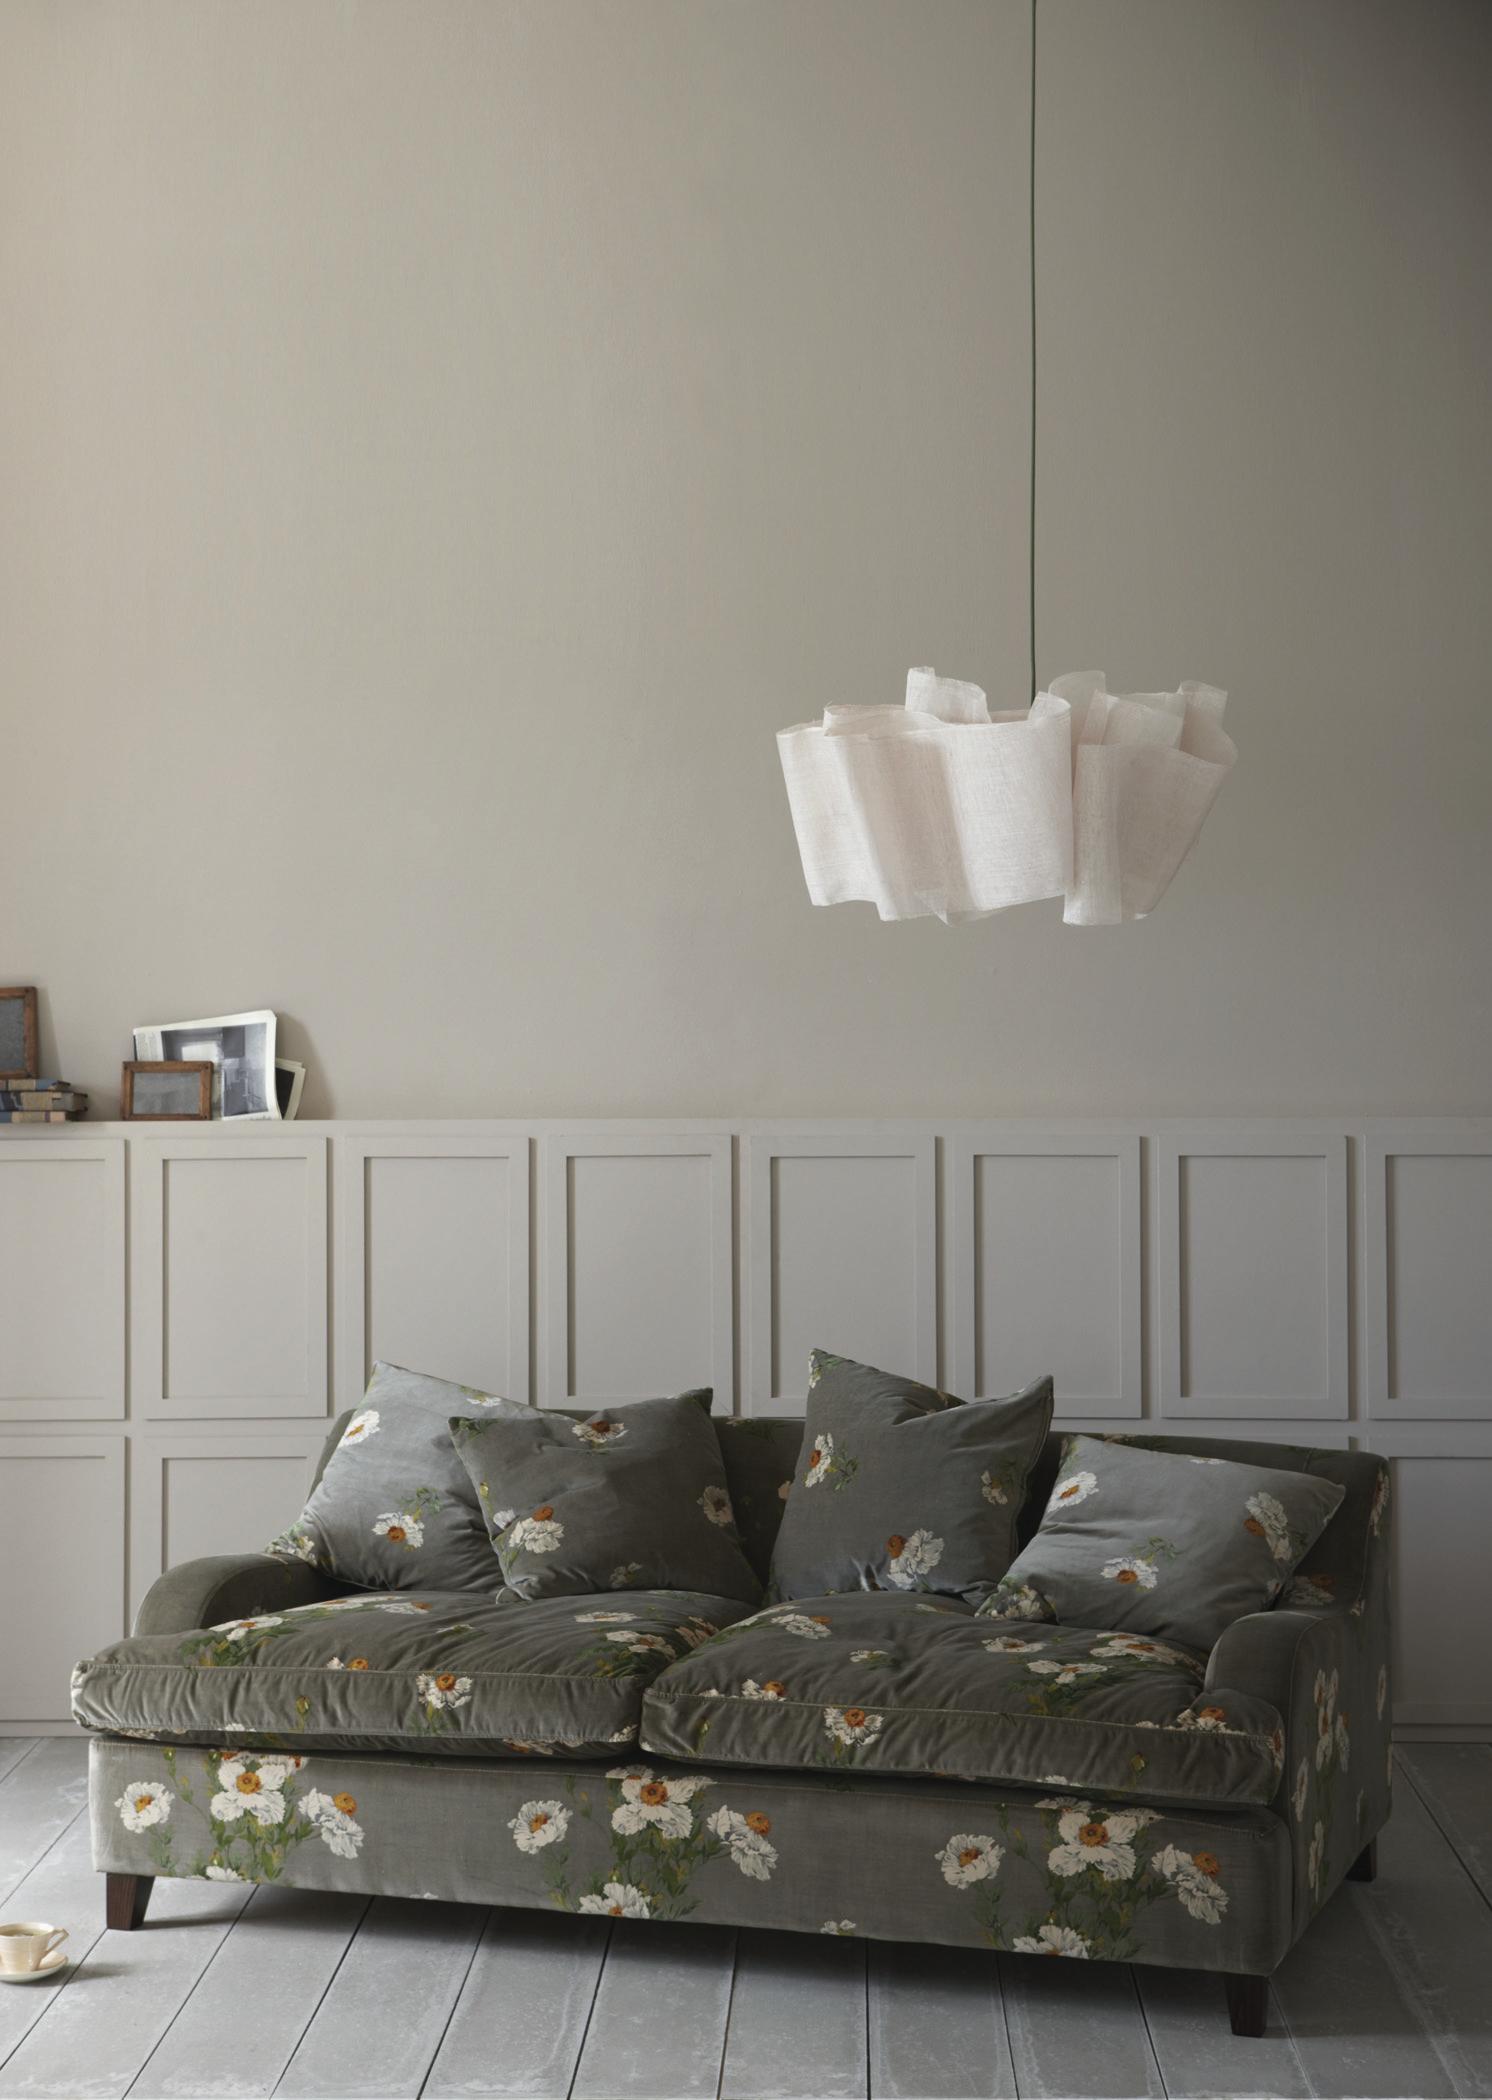 Sofa mit Blumenmuster #blumensofa ©Pinch Design